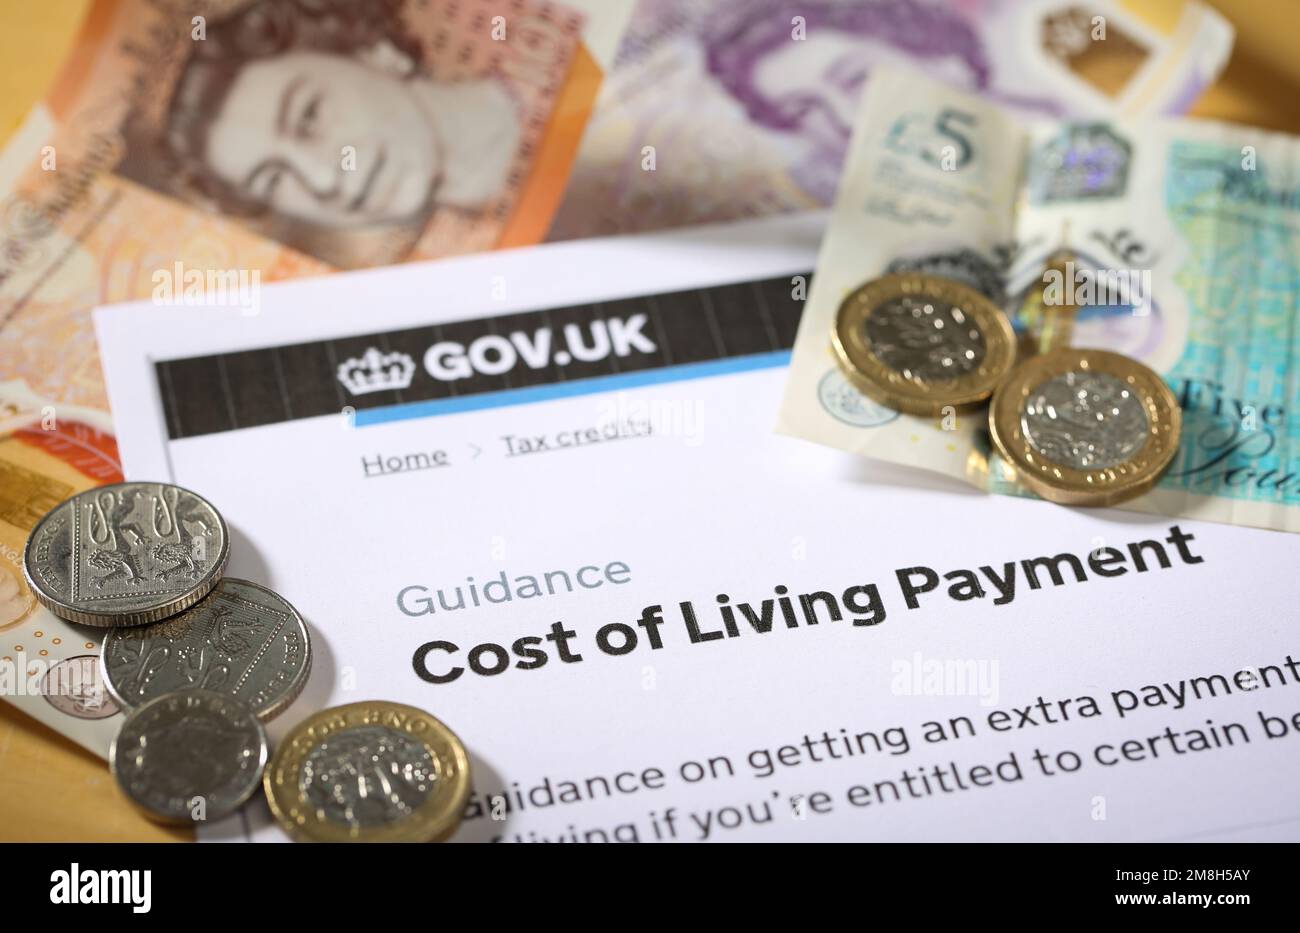 Die "Cost of Living Crisis" im Vereinigten Königreich. Zahlung der Lebenshaltungskosten der britischen Regierung zur Unterstützung von Menschen mit bestimmten Vergünstigungen oder Steuergutschriften. Stockfoto